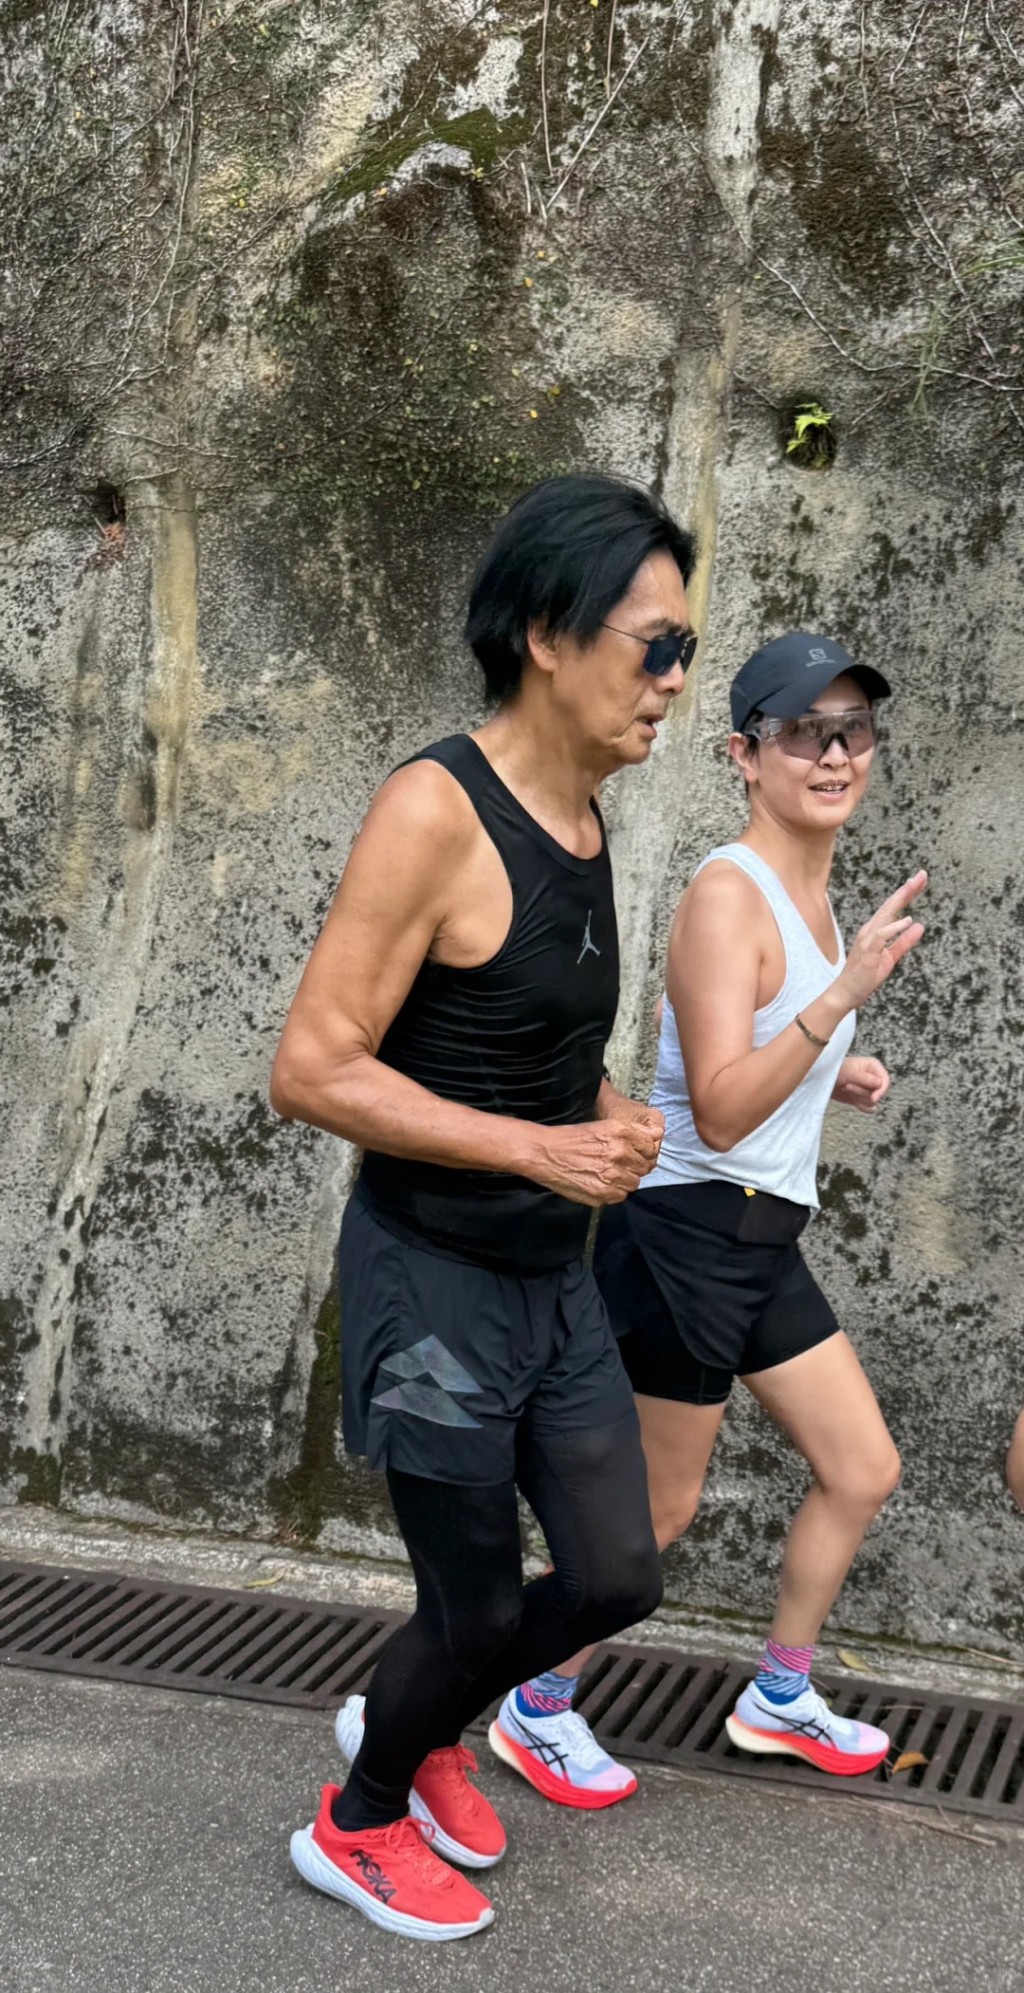 近日有网民在太平山偷拍了跑步中的周润发，照片清楚看到周润发两边大腿肌肉肿胀得如乒乓球。